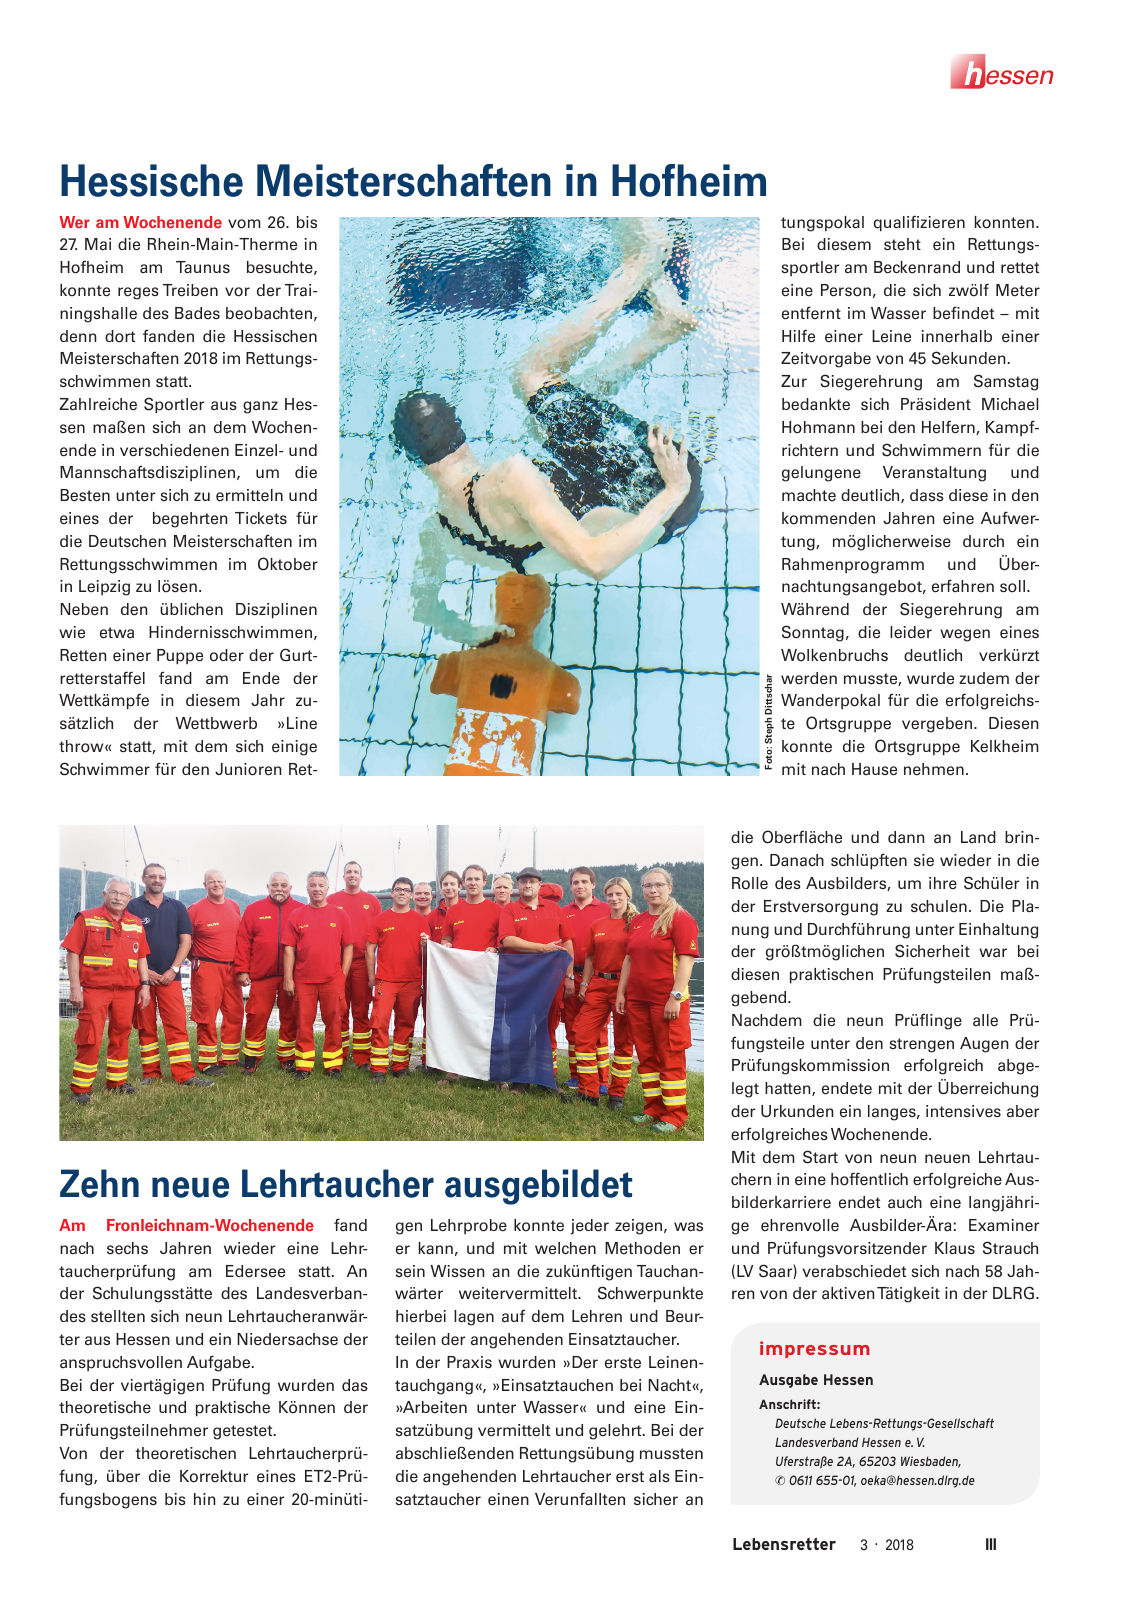 Vorschau Lebensretter 3/2018 - Regionalausgabe Hessen Seite 5